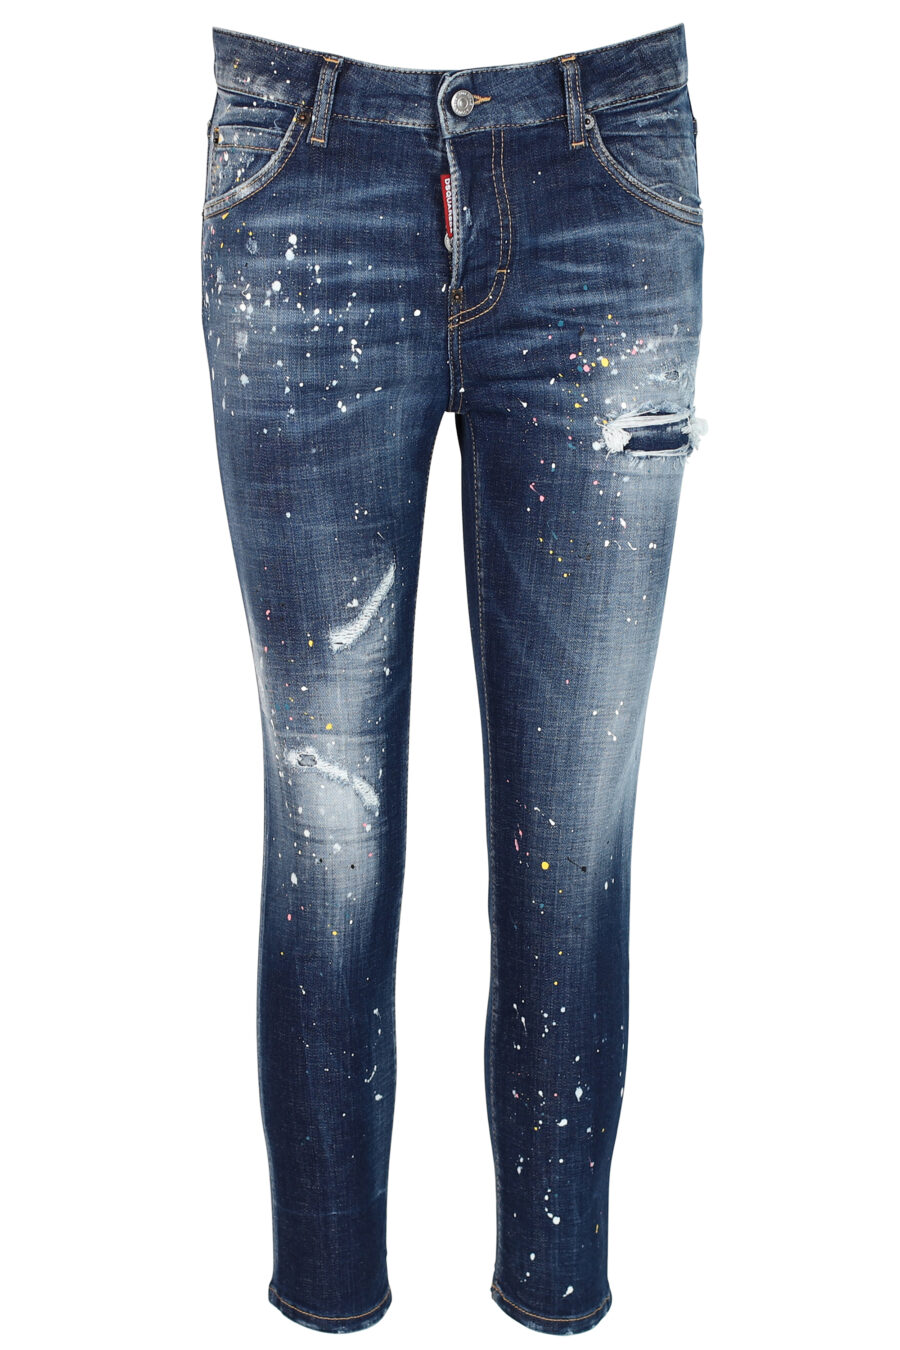 Pantalón vaquero "Cool girl cropped jean" azul desgastado con rotos - 8052134942512